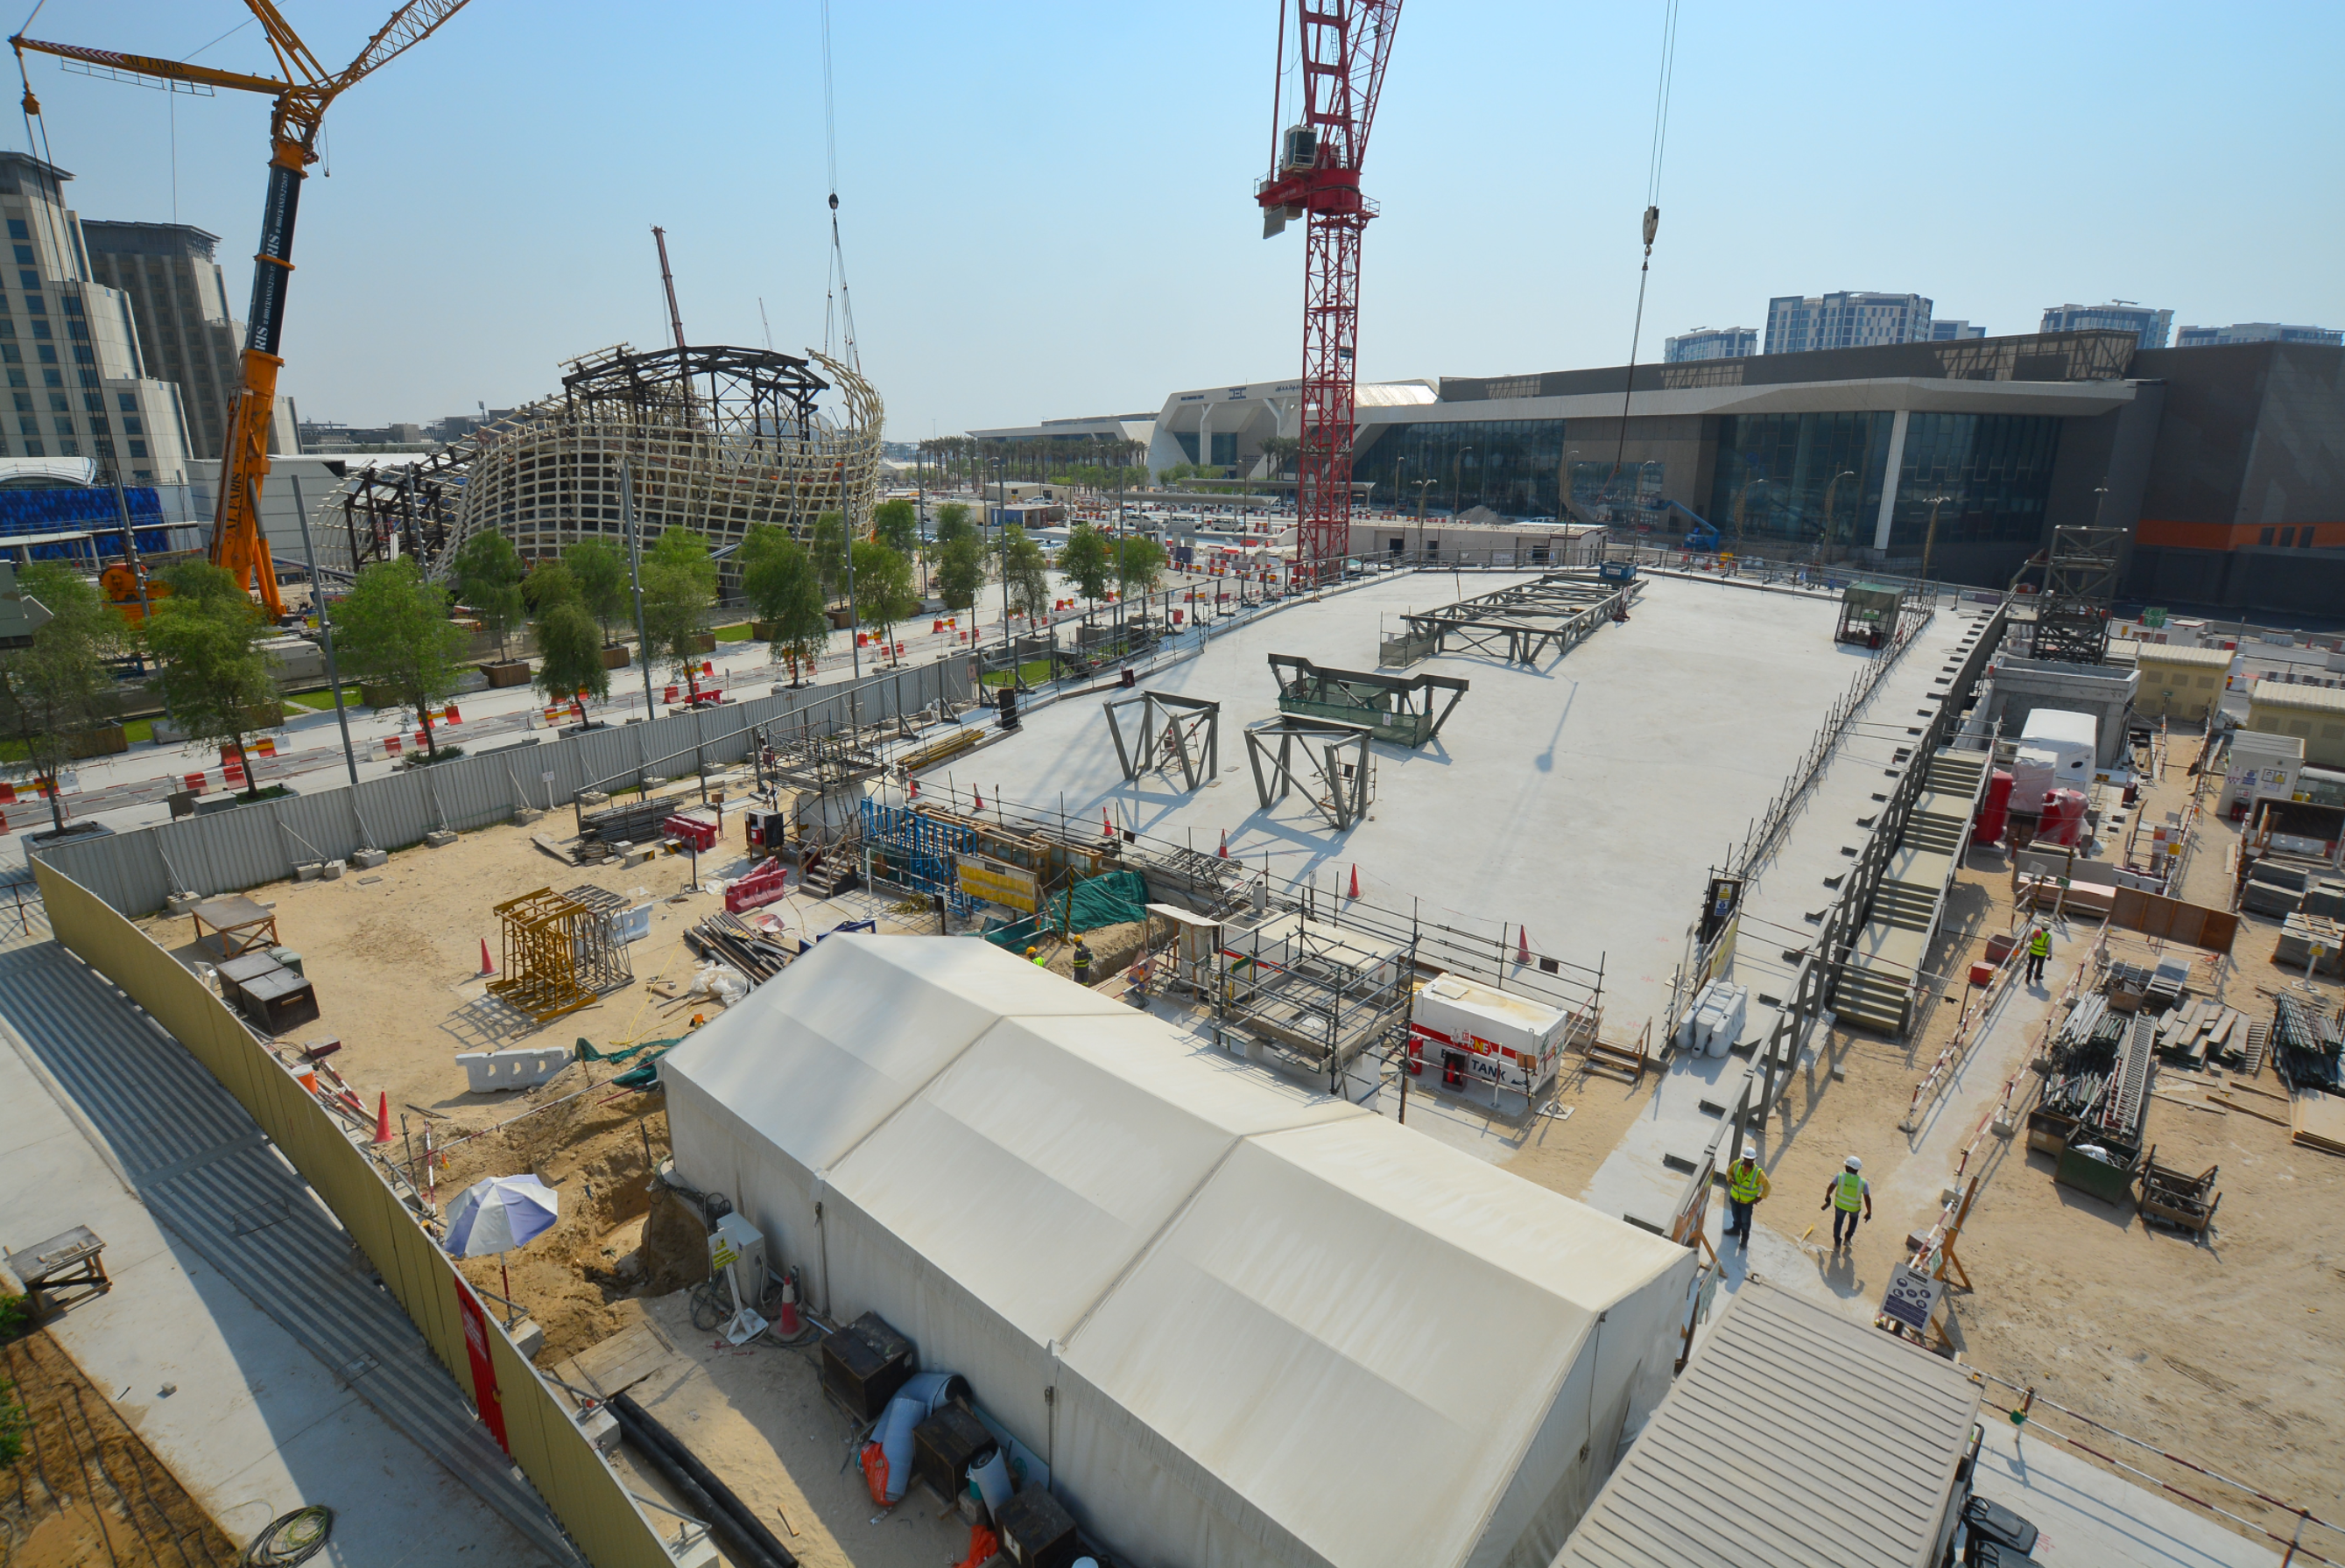 UK pavilion construction site August 2020